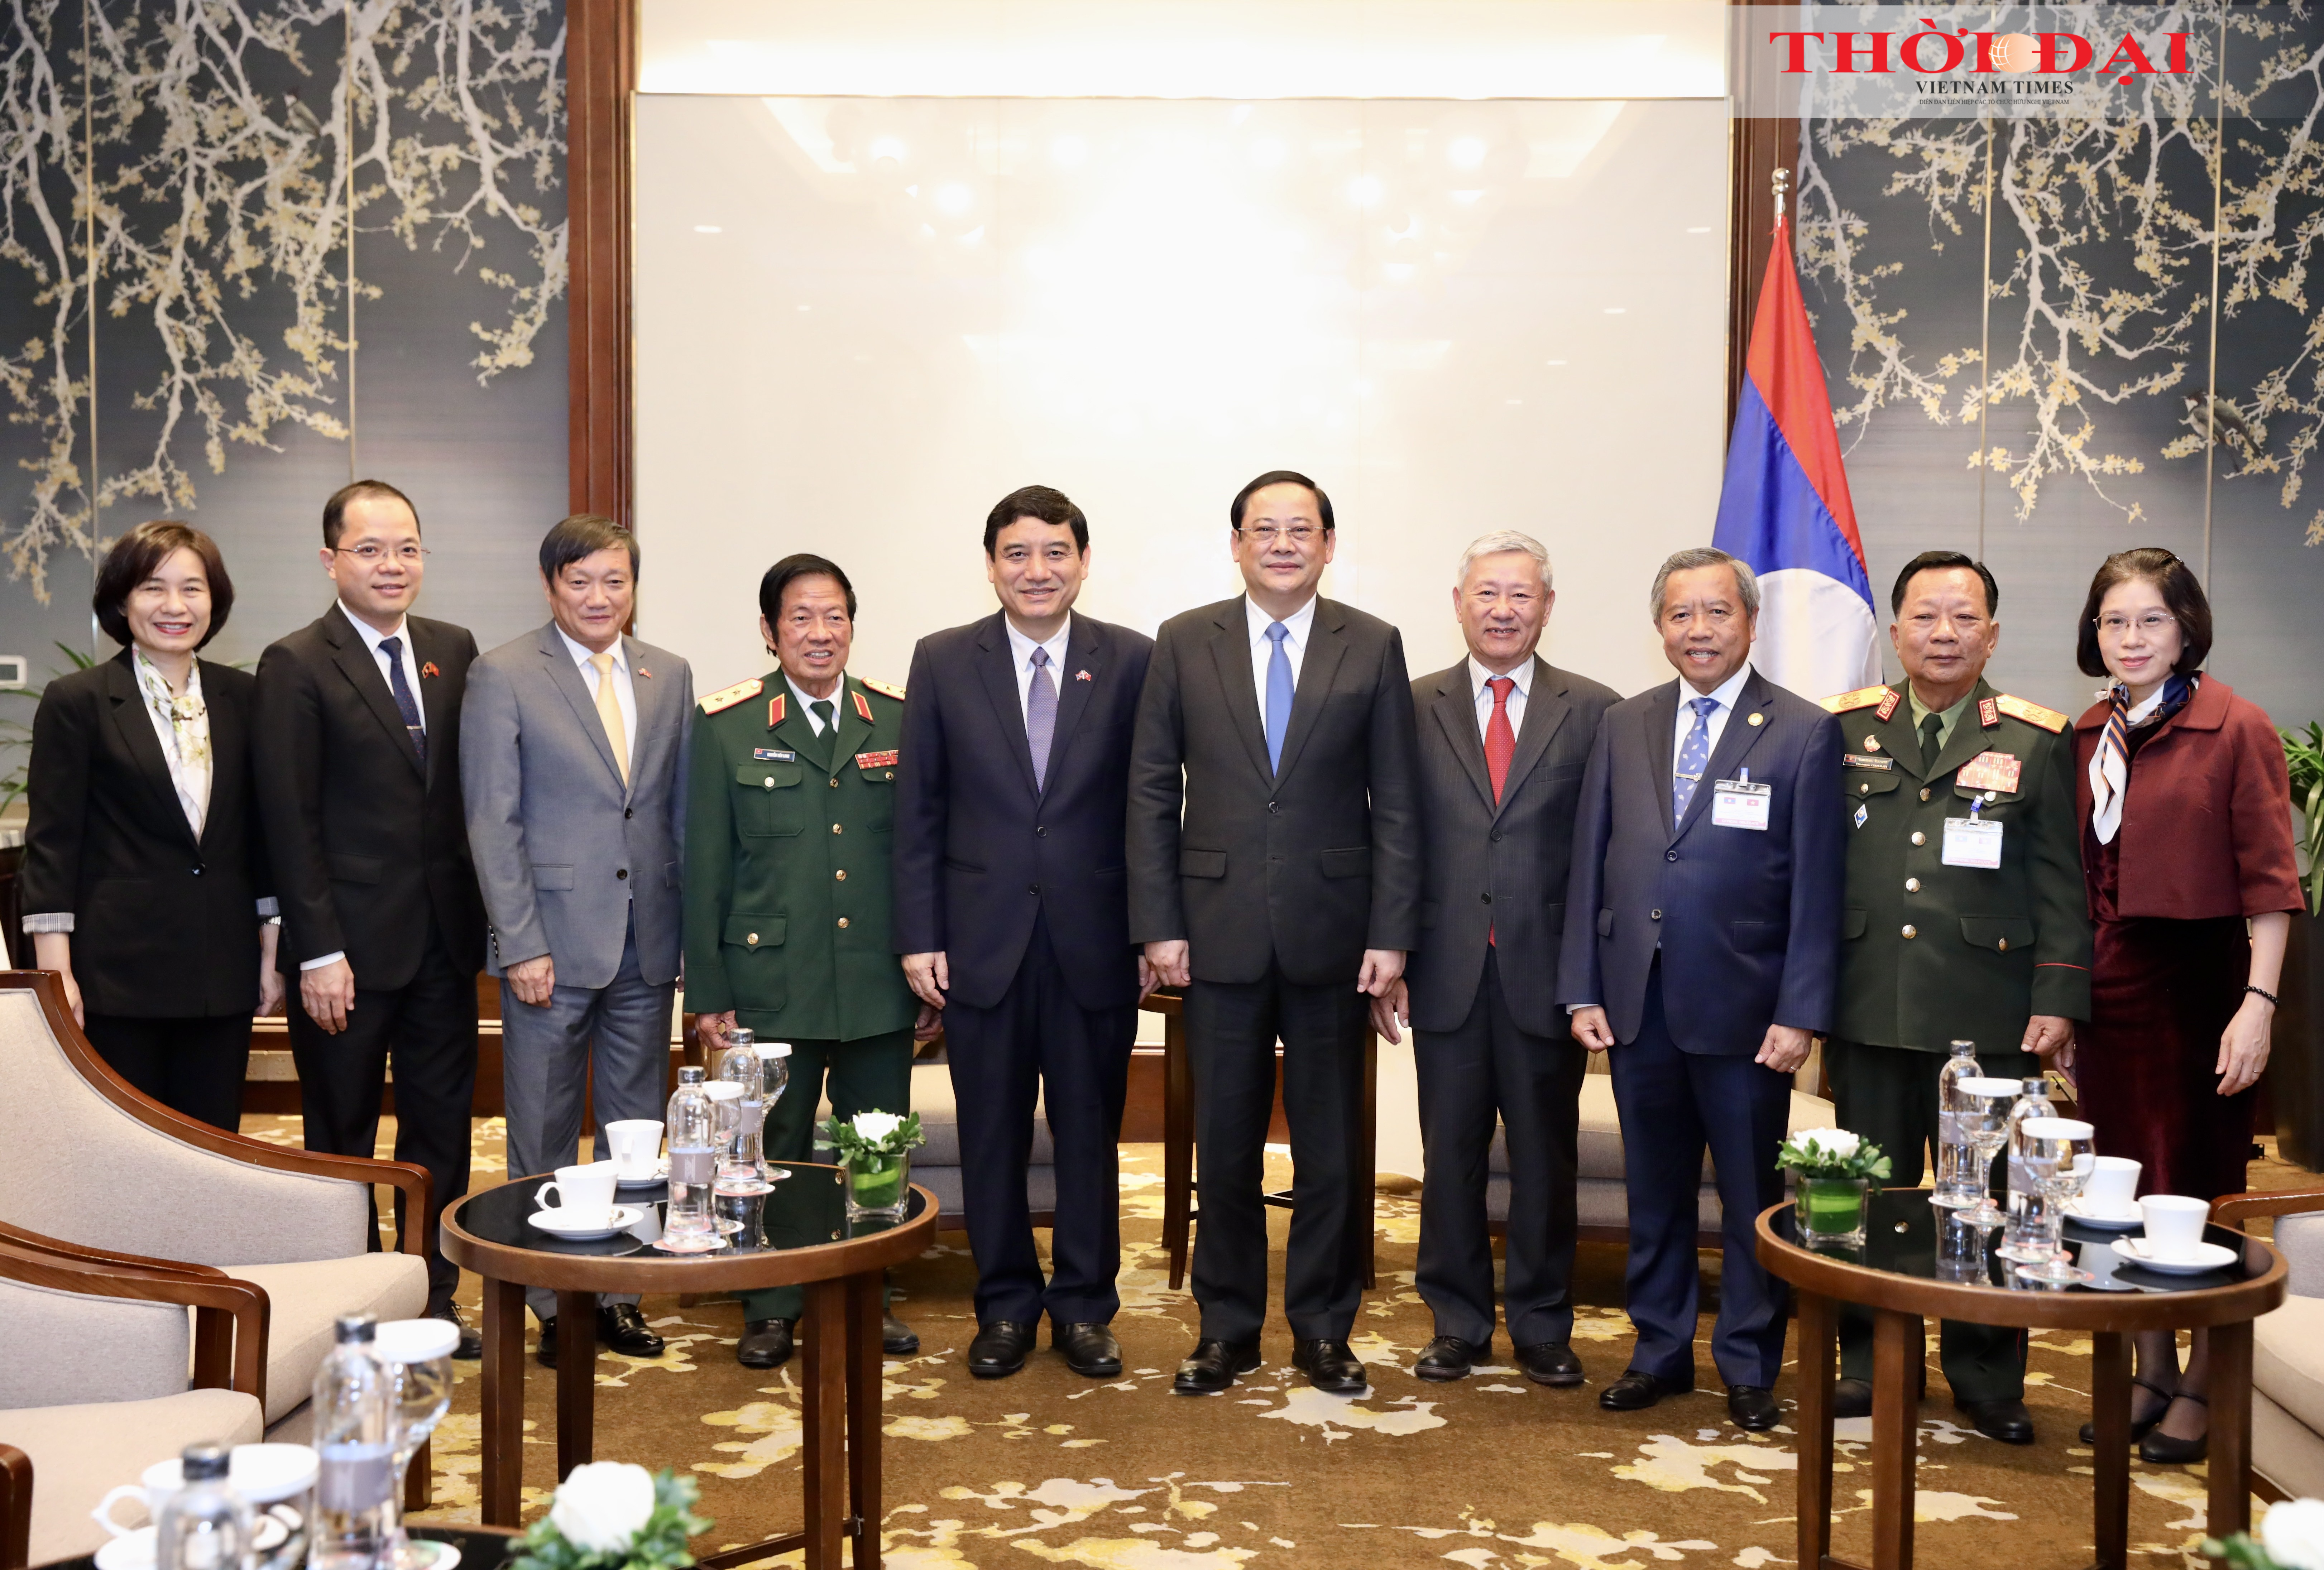 Đoàn đại biểu hai nước chụp hình lưu niệm tại cuộc gặp Thủ tướng Sonexay Siphandon